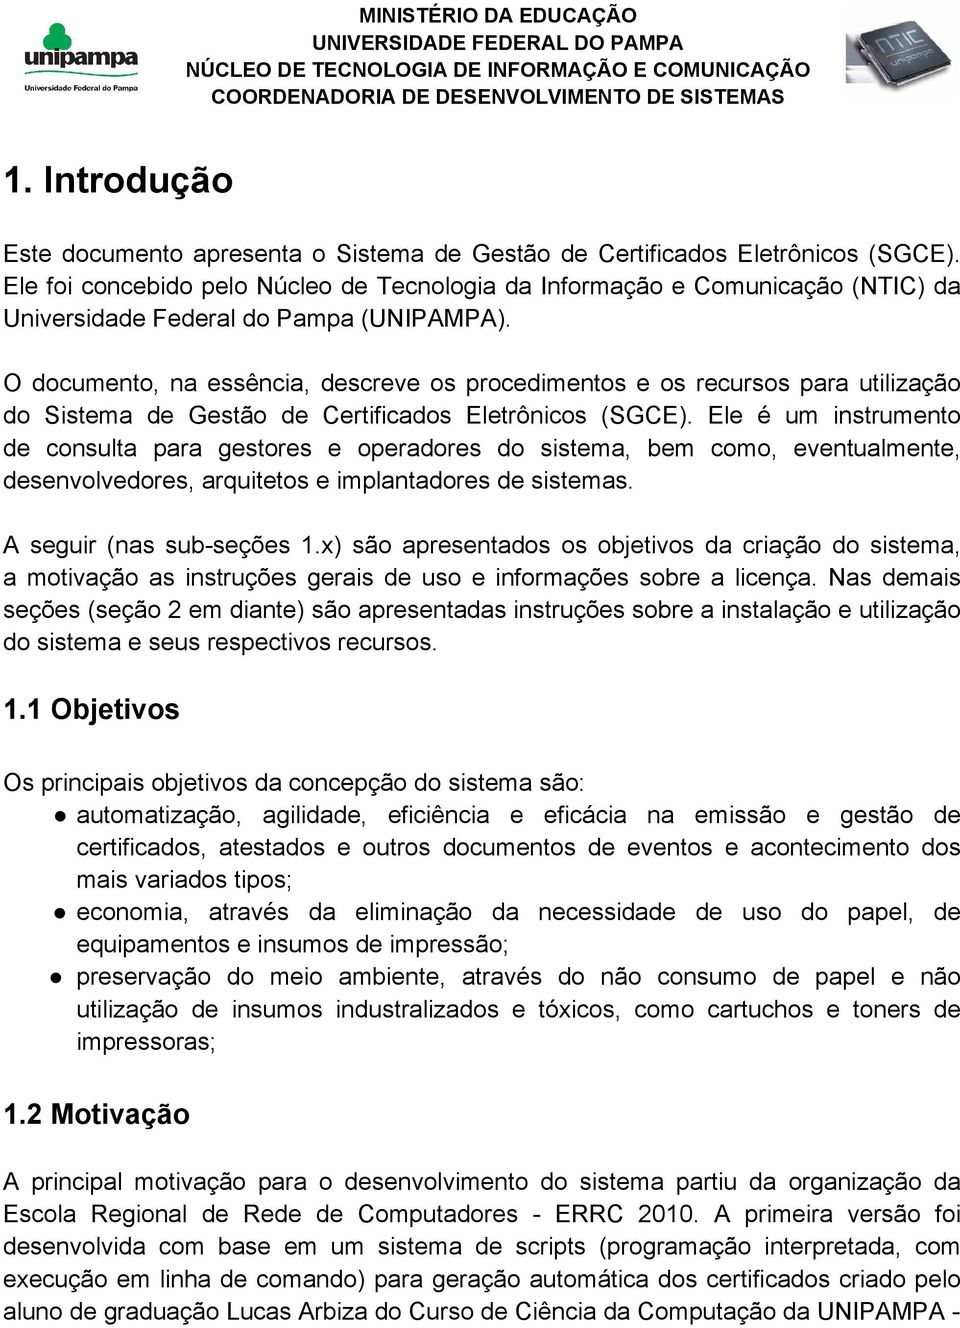 O documento, na essência, descreve os procedimentos e os recursos para utilização do Sistema de Gestão de Certificados Eletrônicos (SGCE).